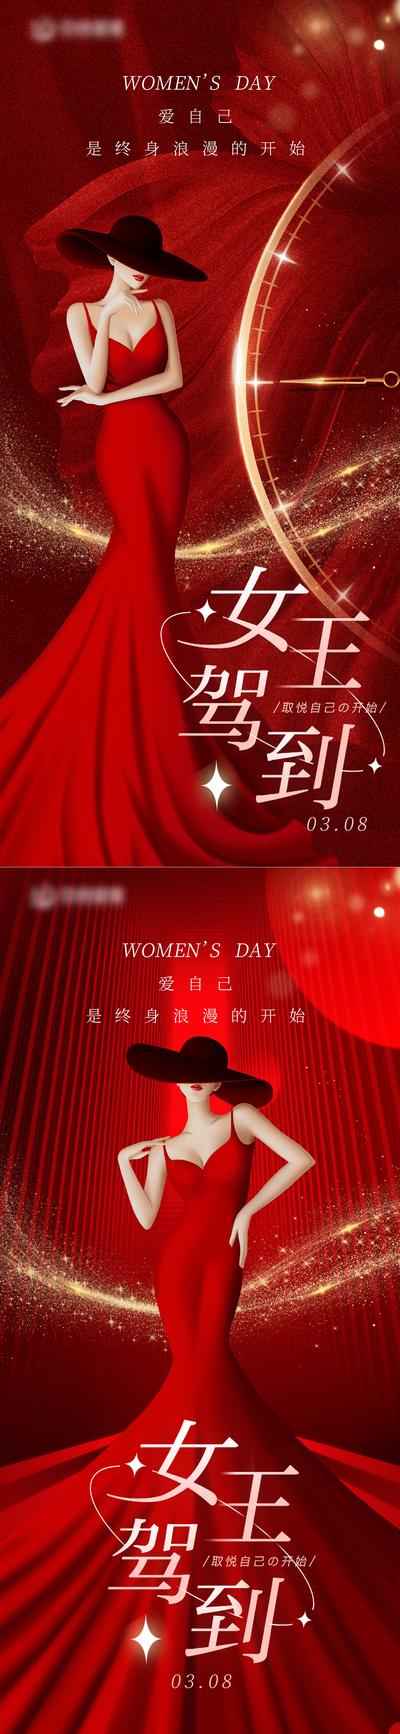 南门网 海报 医美 公历节日 妇女节 人物 红金